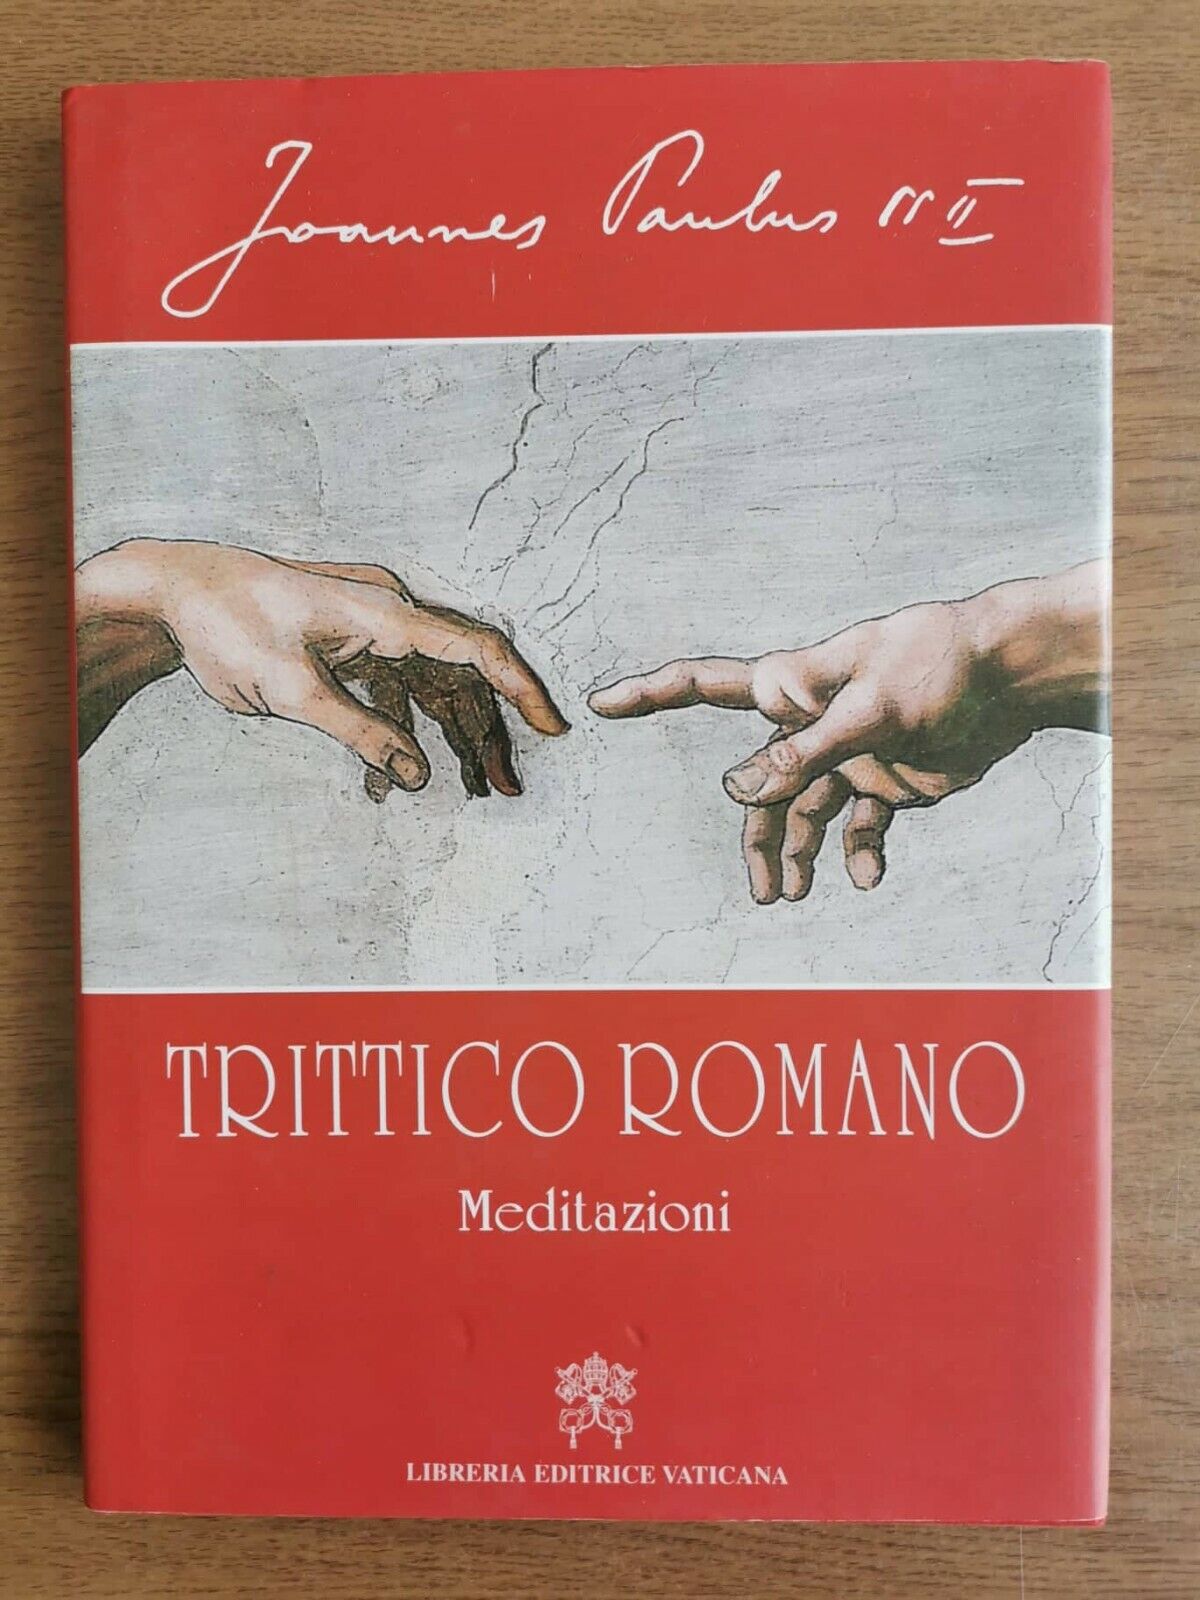 Trittico romano - Giovanni Paolo II - Vaticana editrice - 2003 - AR